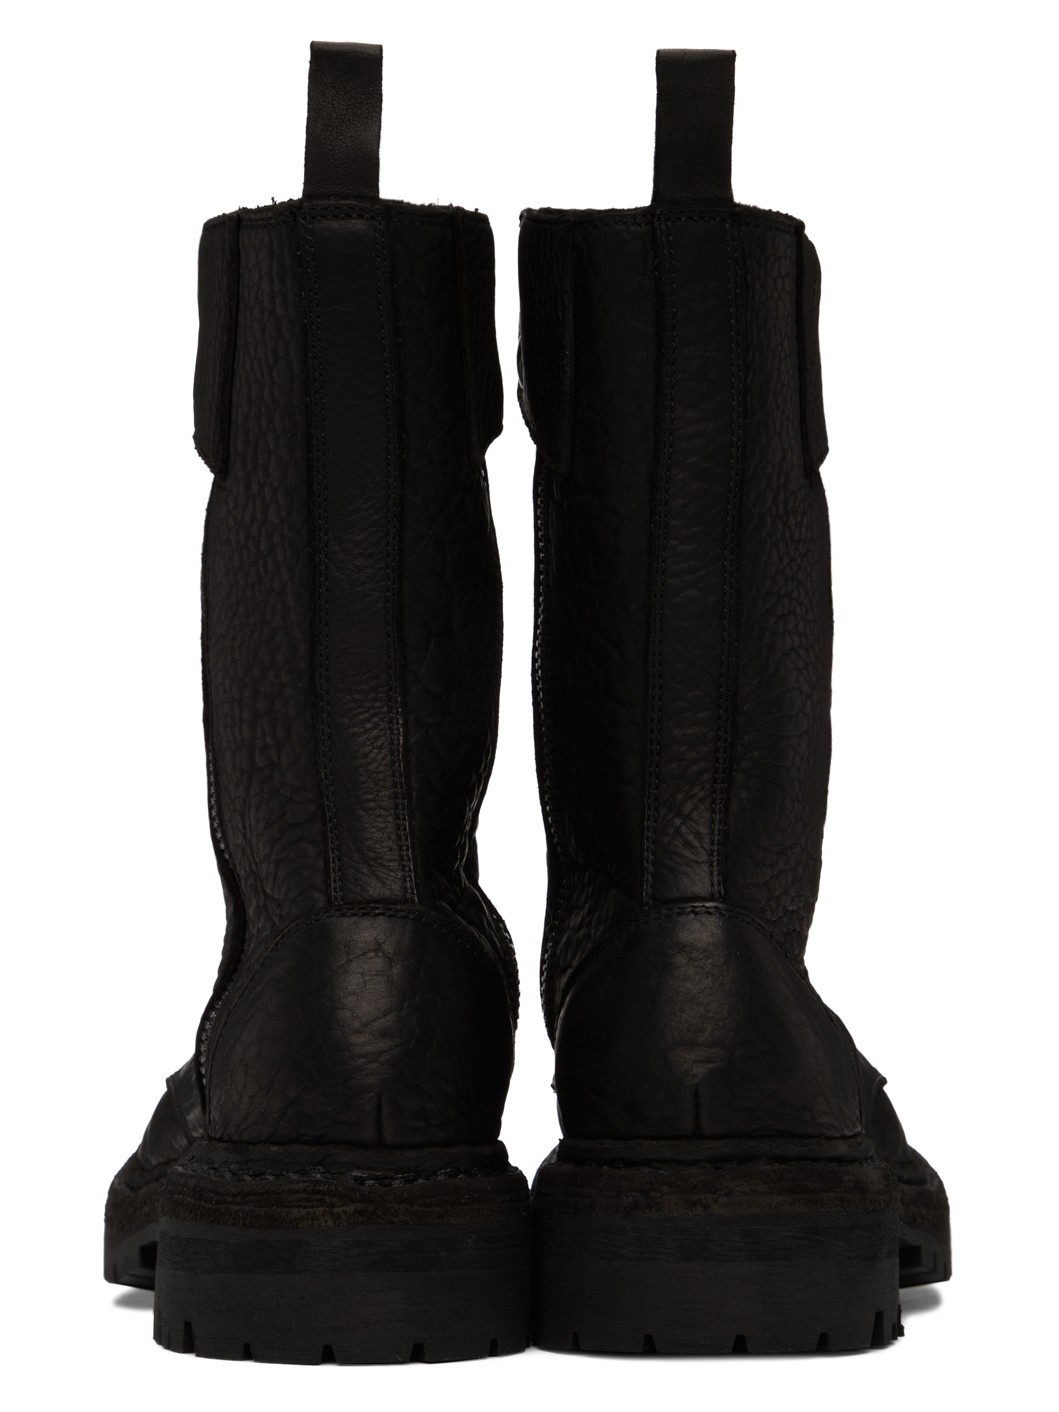 Black StyleZeitgeist Edition ER01V Boots - 2